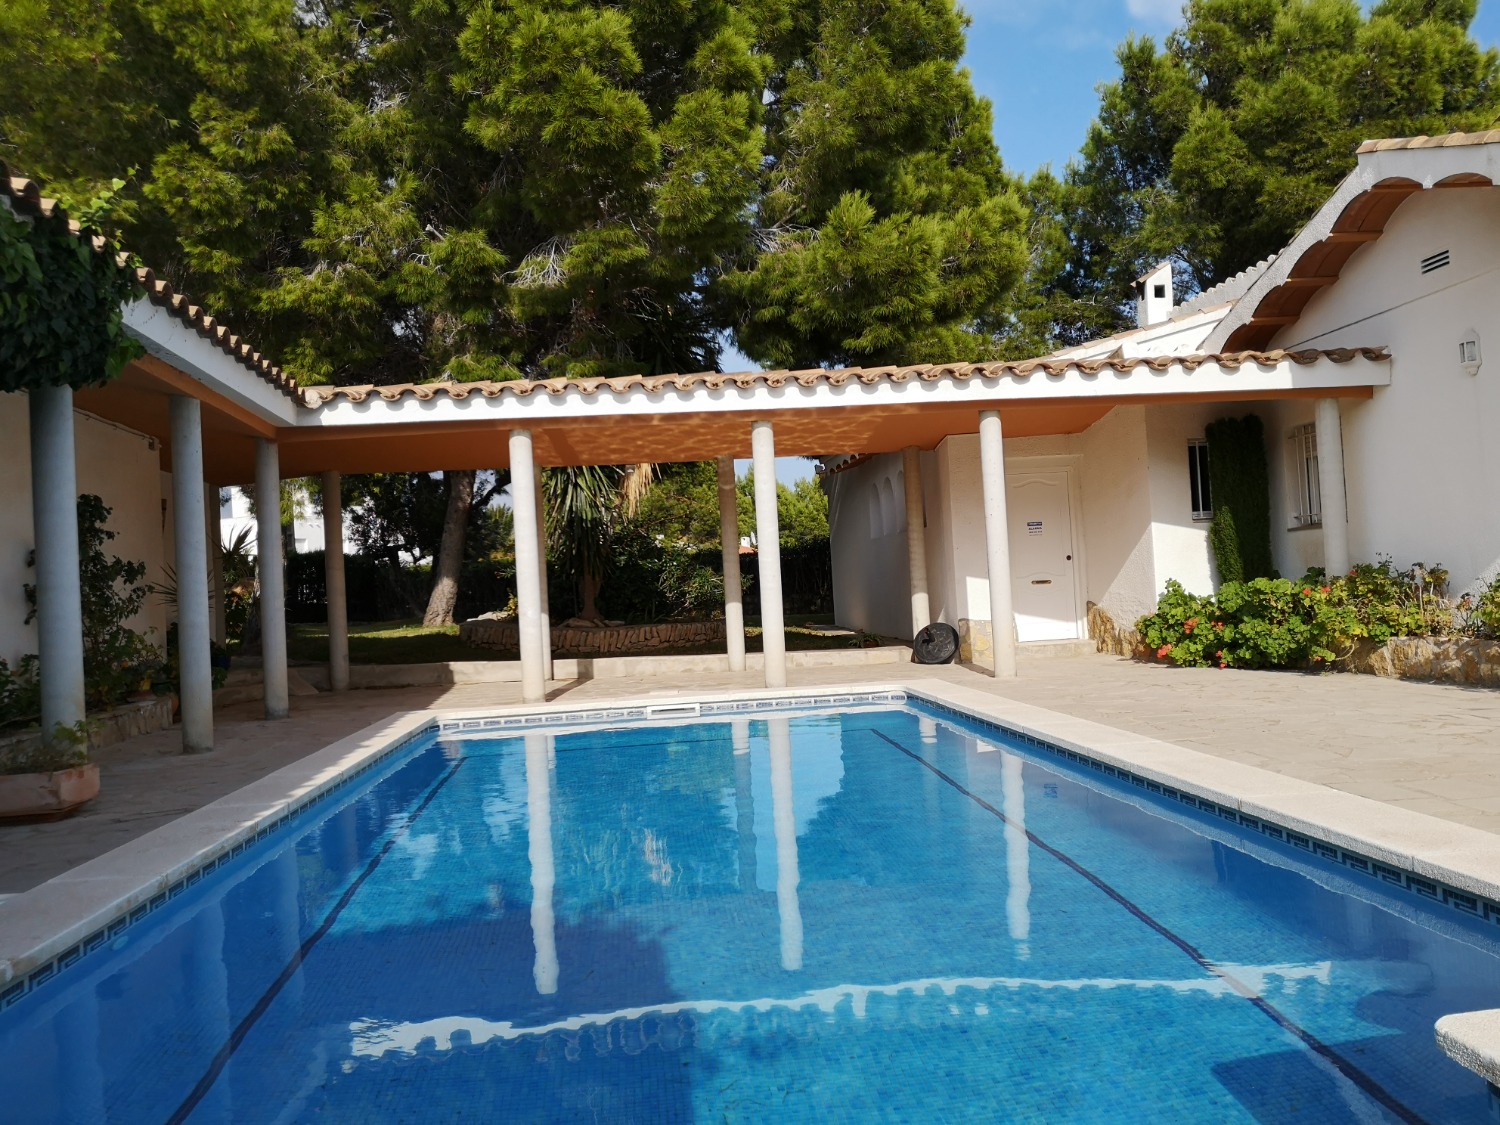 Gran propiedad que consta de 2 casas con piscina privada